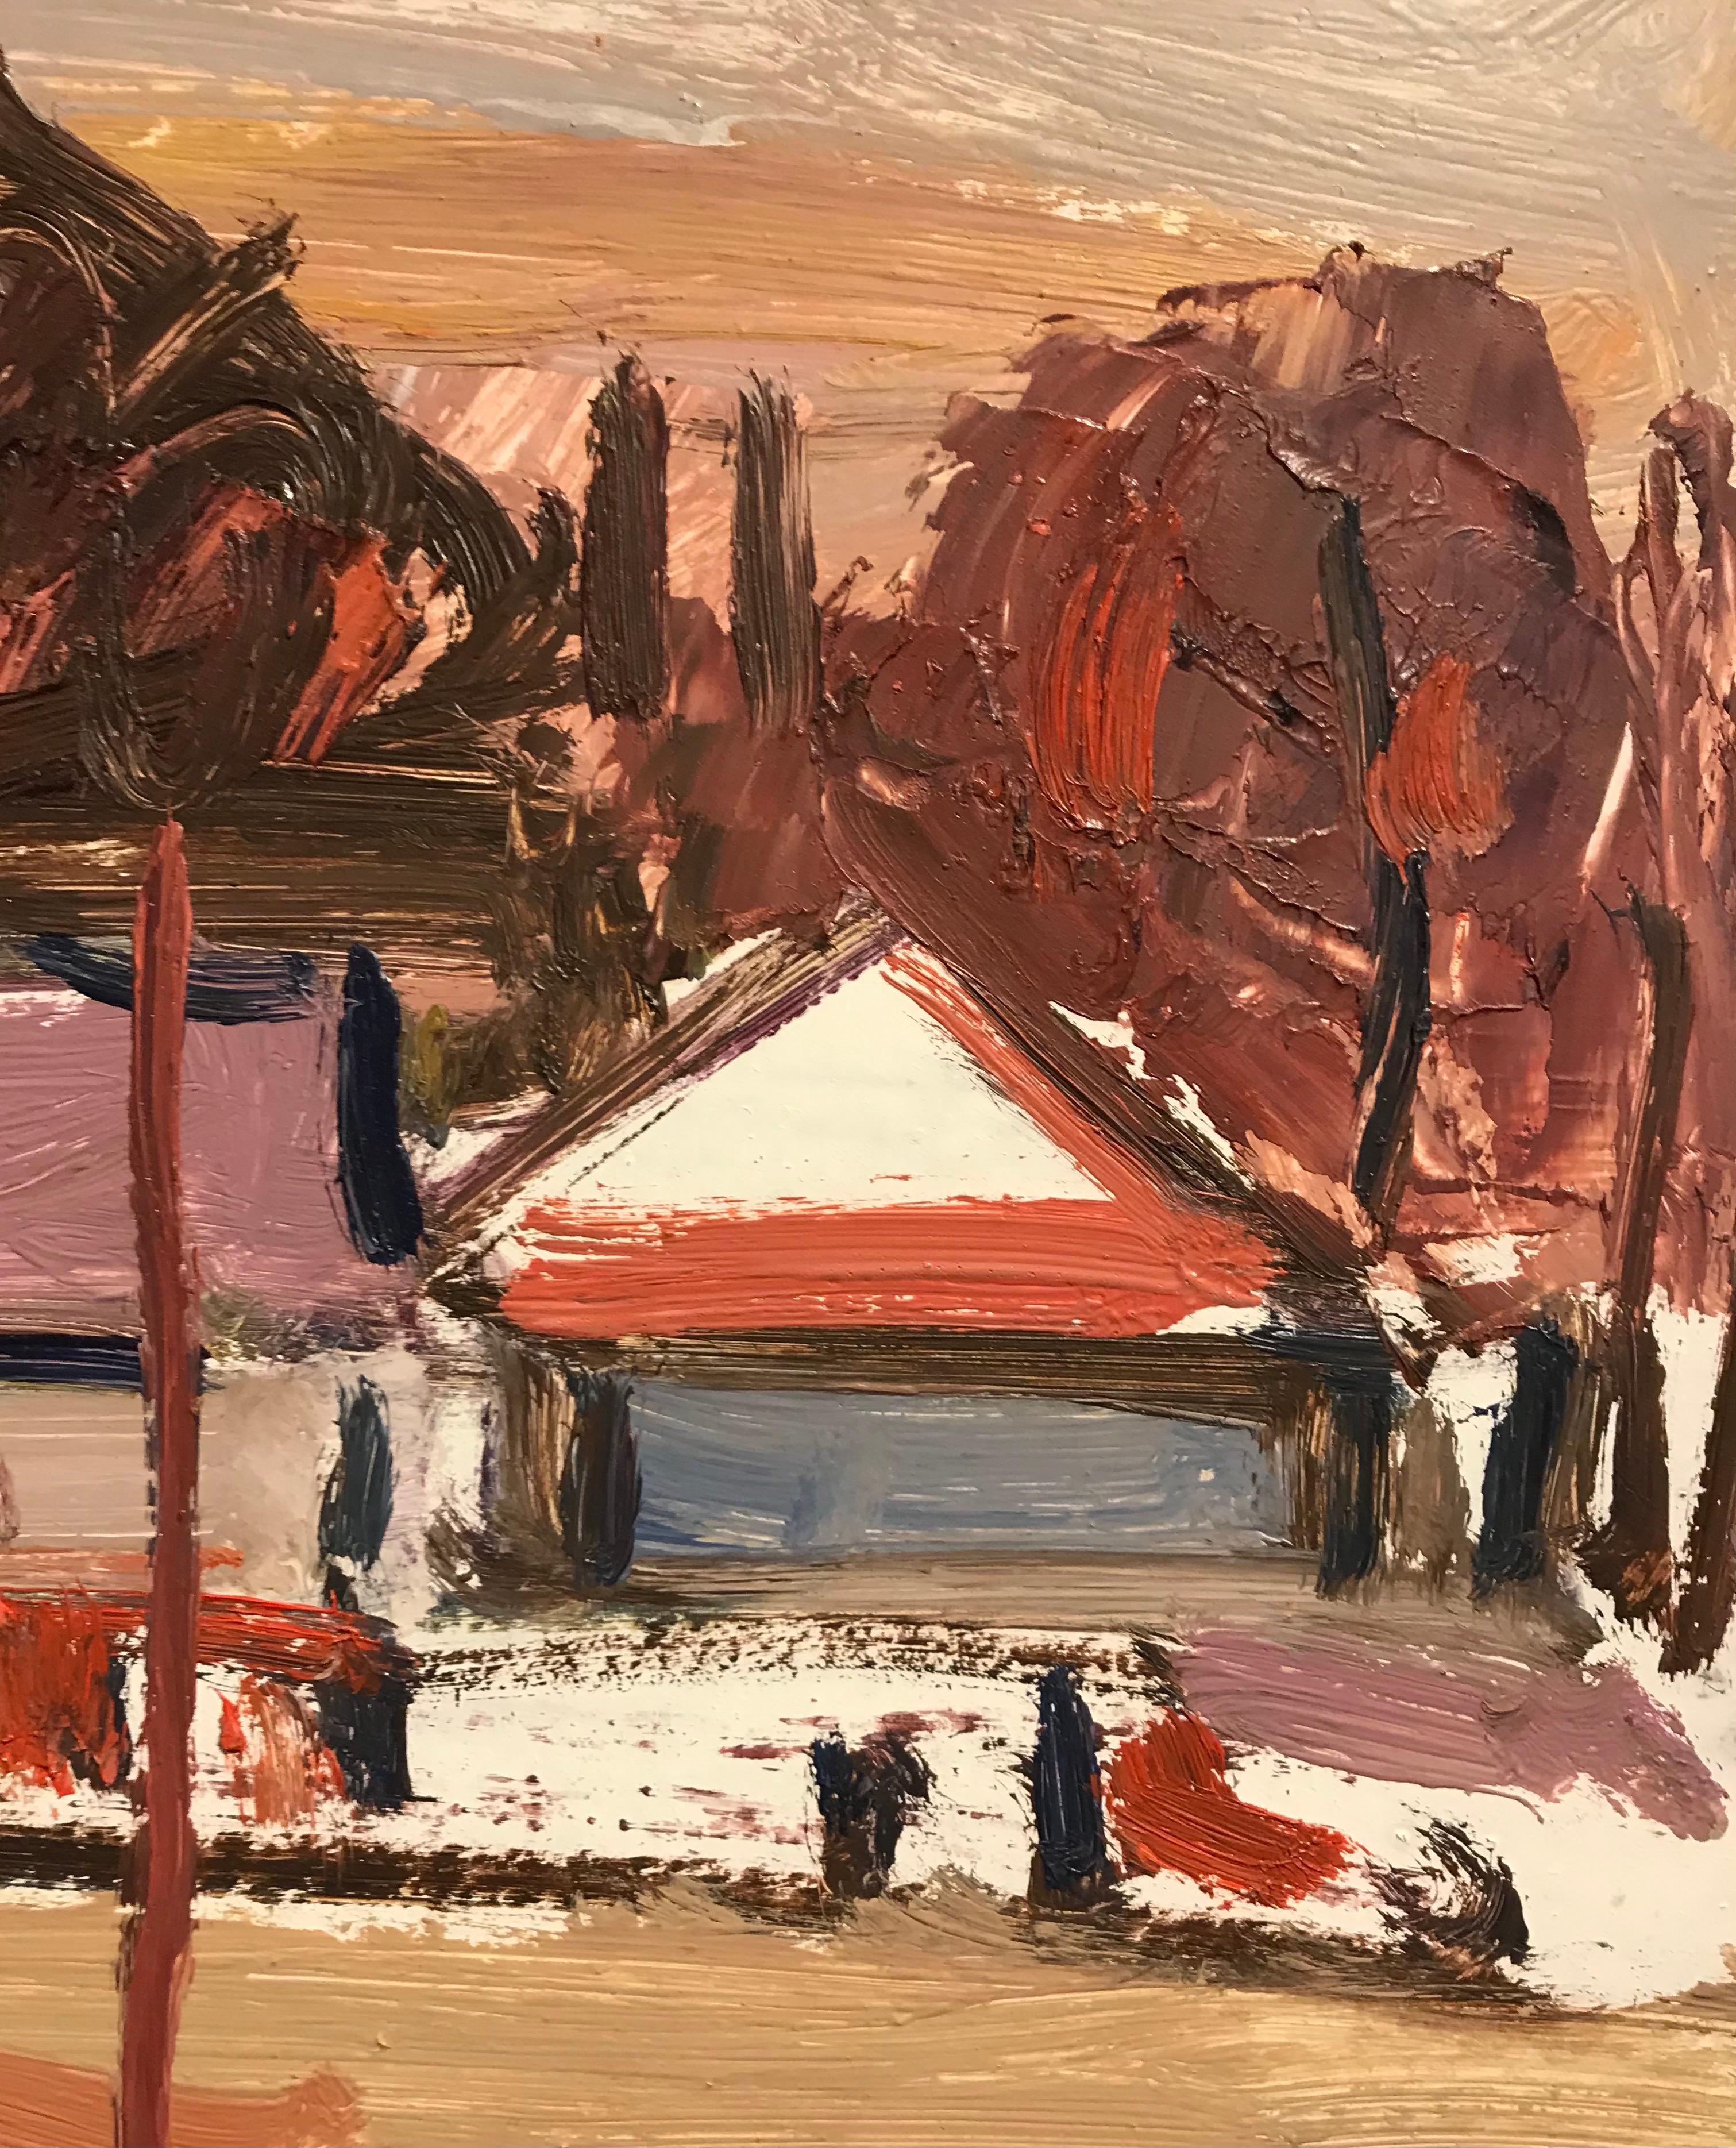 Tableau n°45 by Jean Krillé - Oil on cardboard  - Brown Landscape Painting by Jean Krille